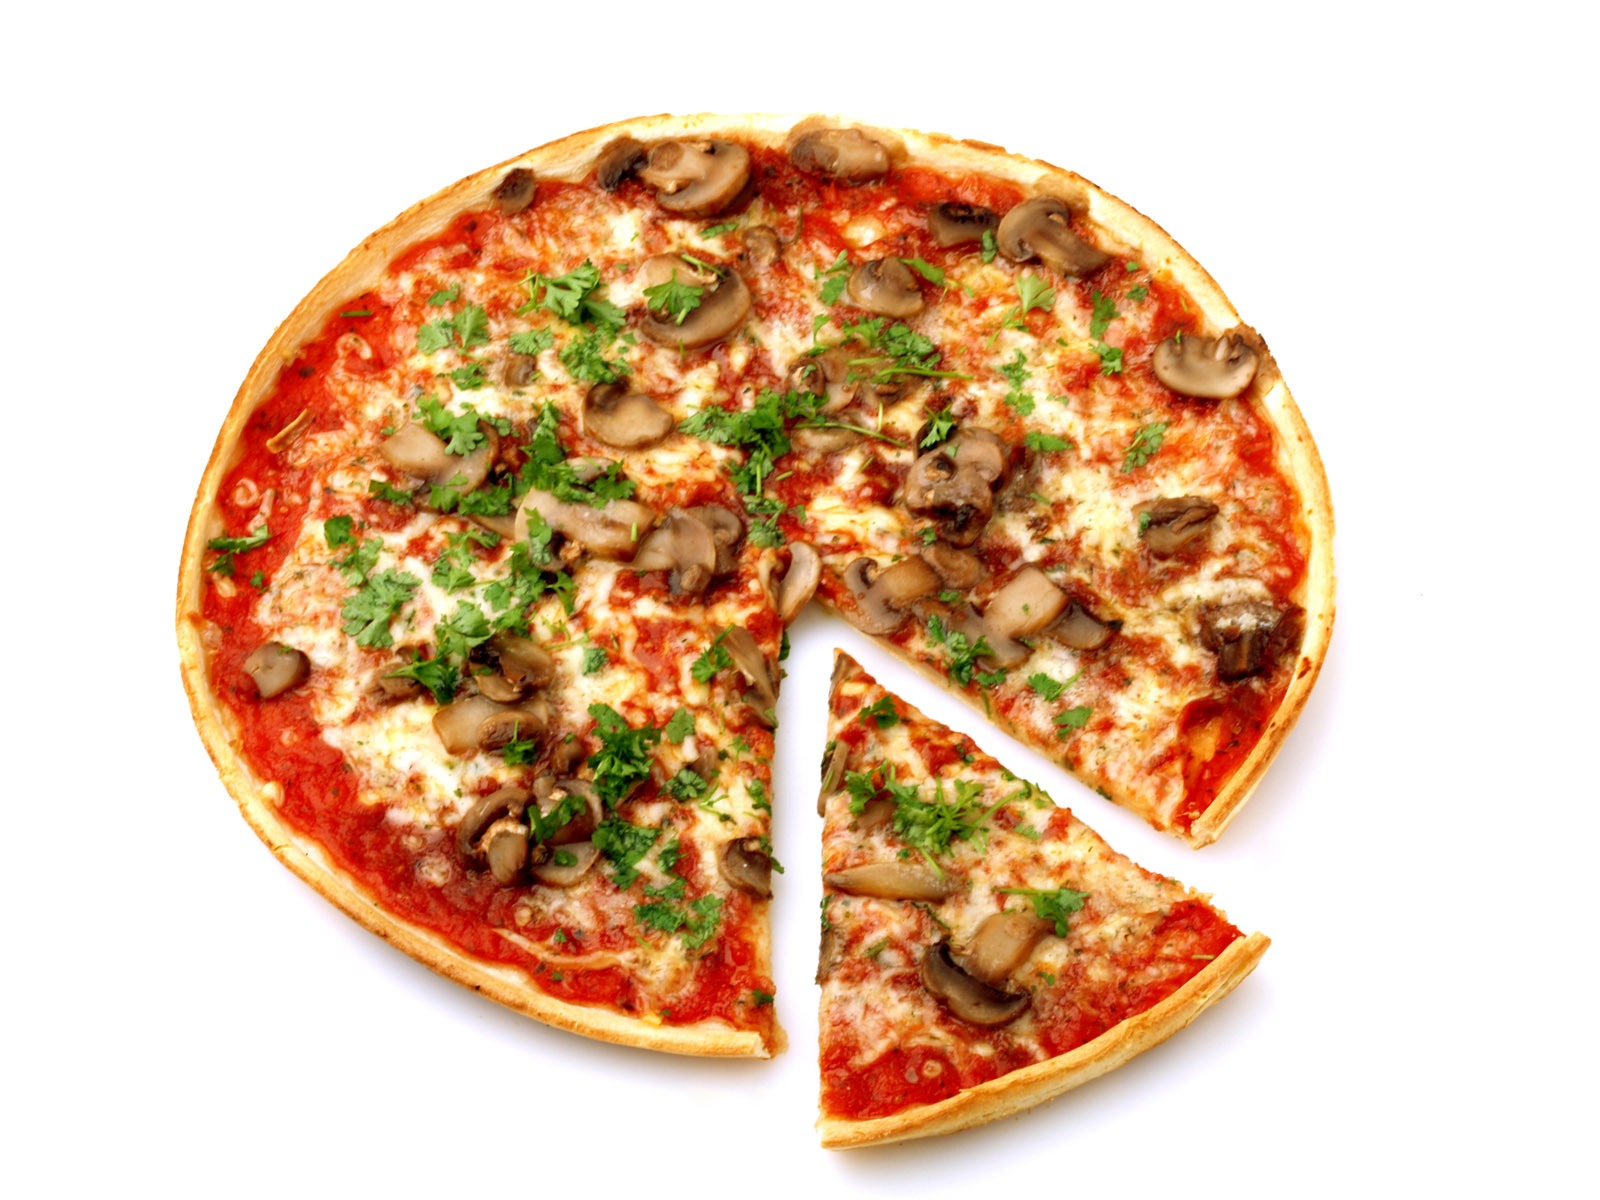 Fondos de pizzerías de Alimentos (4) #2 - 1600x1200